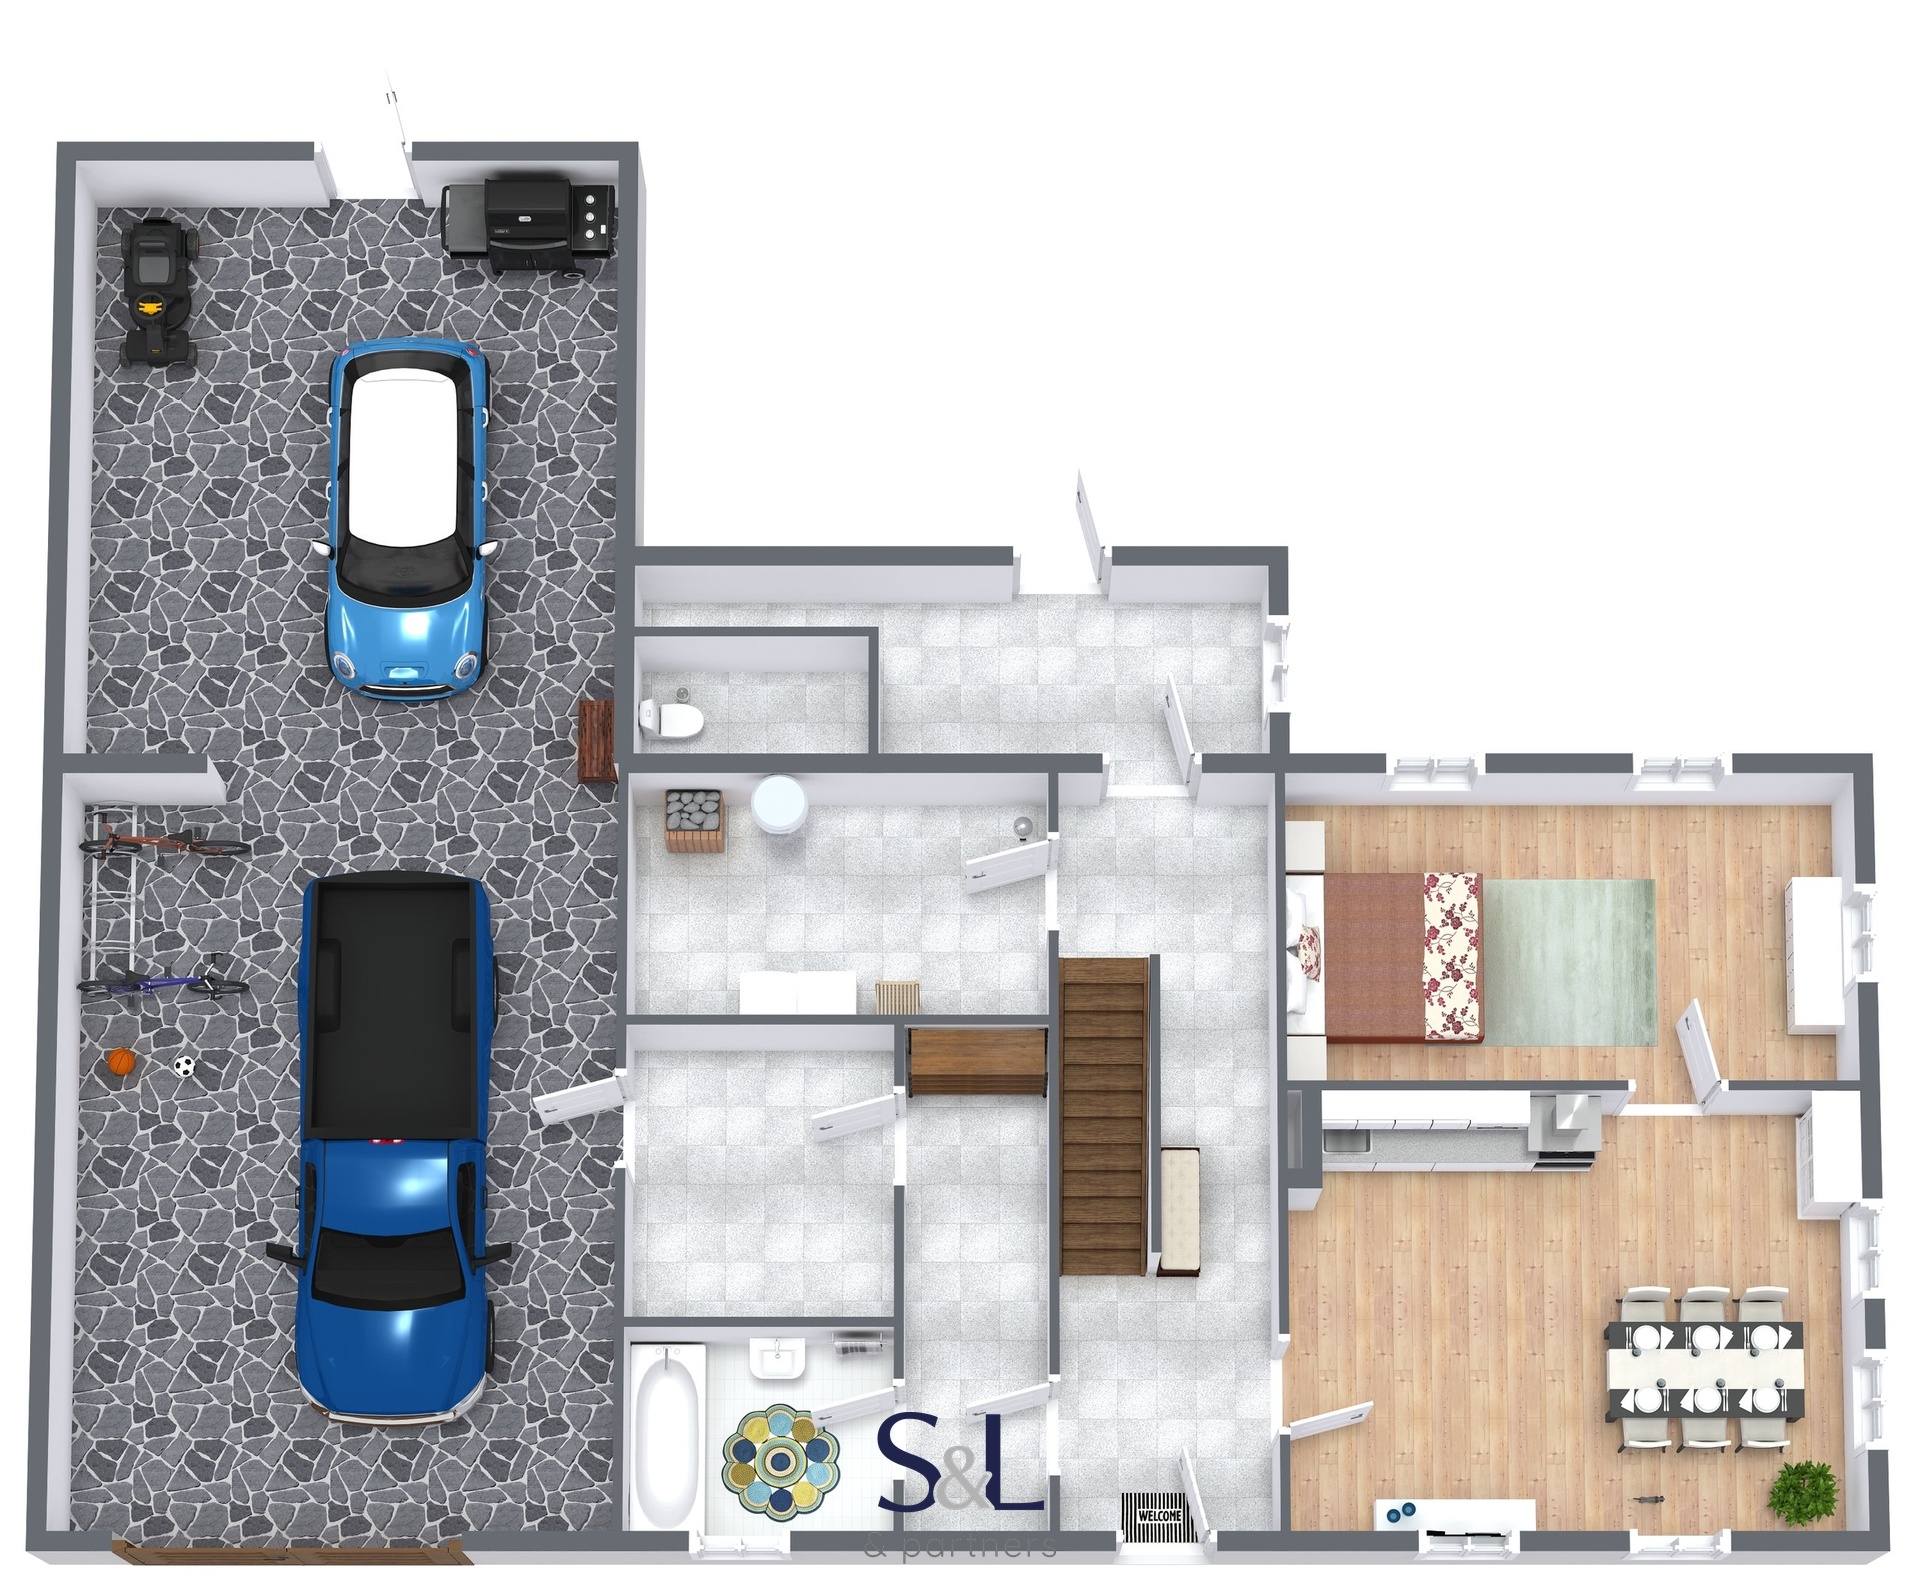 Strunice RD - 1. Floor - 3D Floor Plan